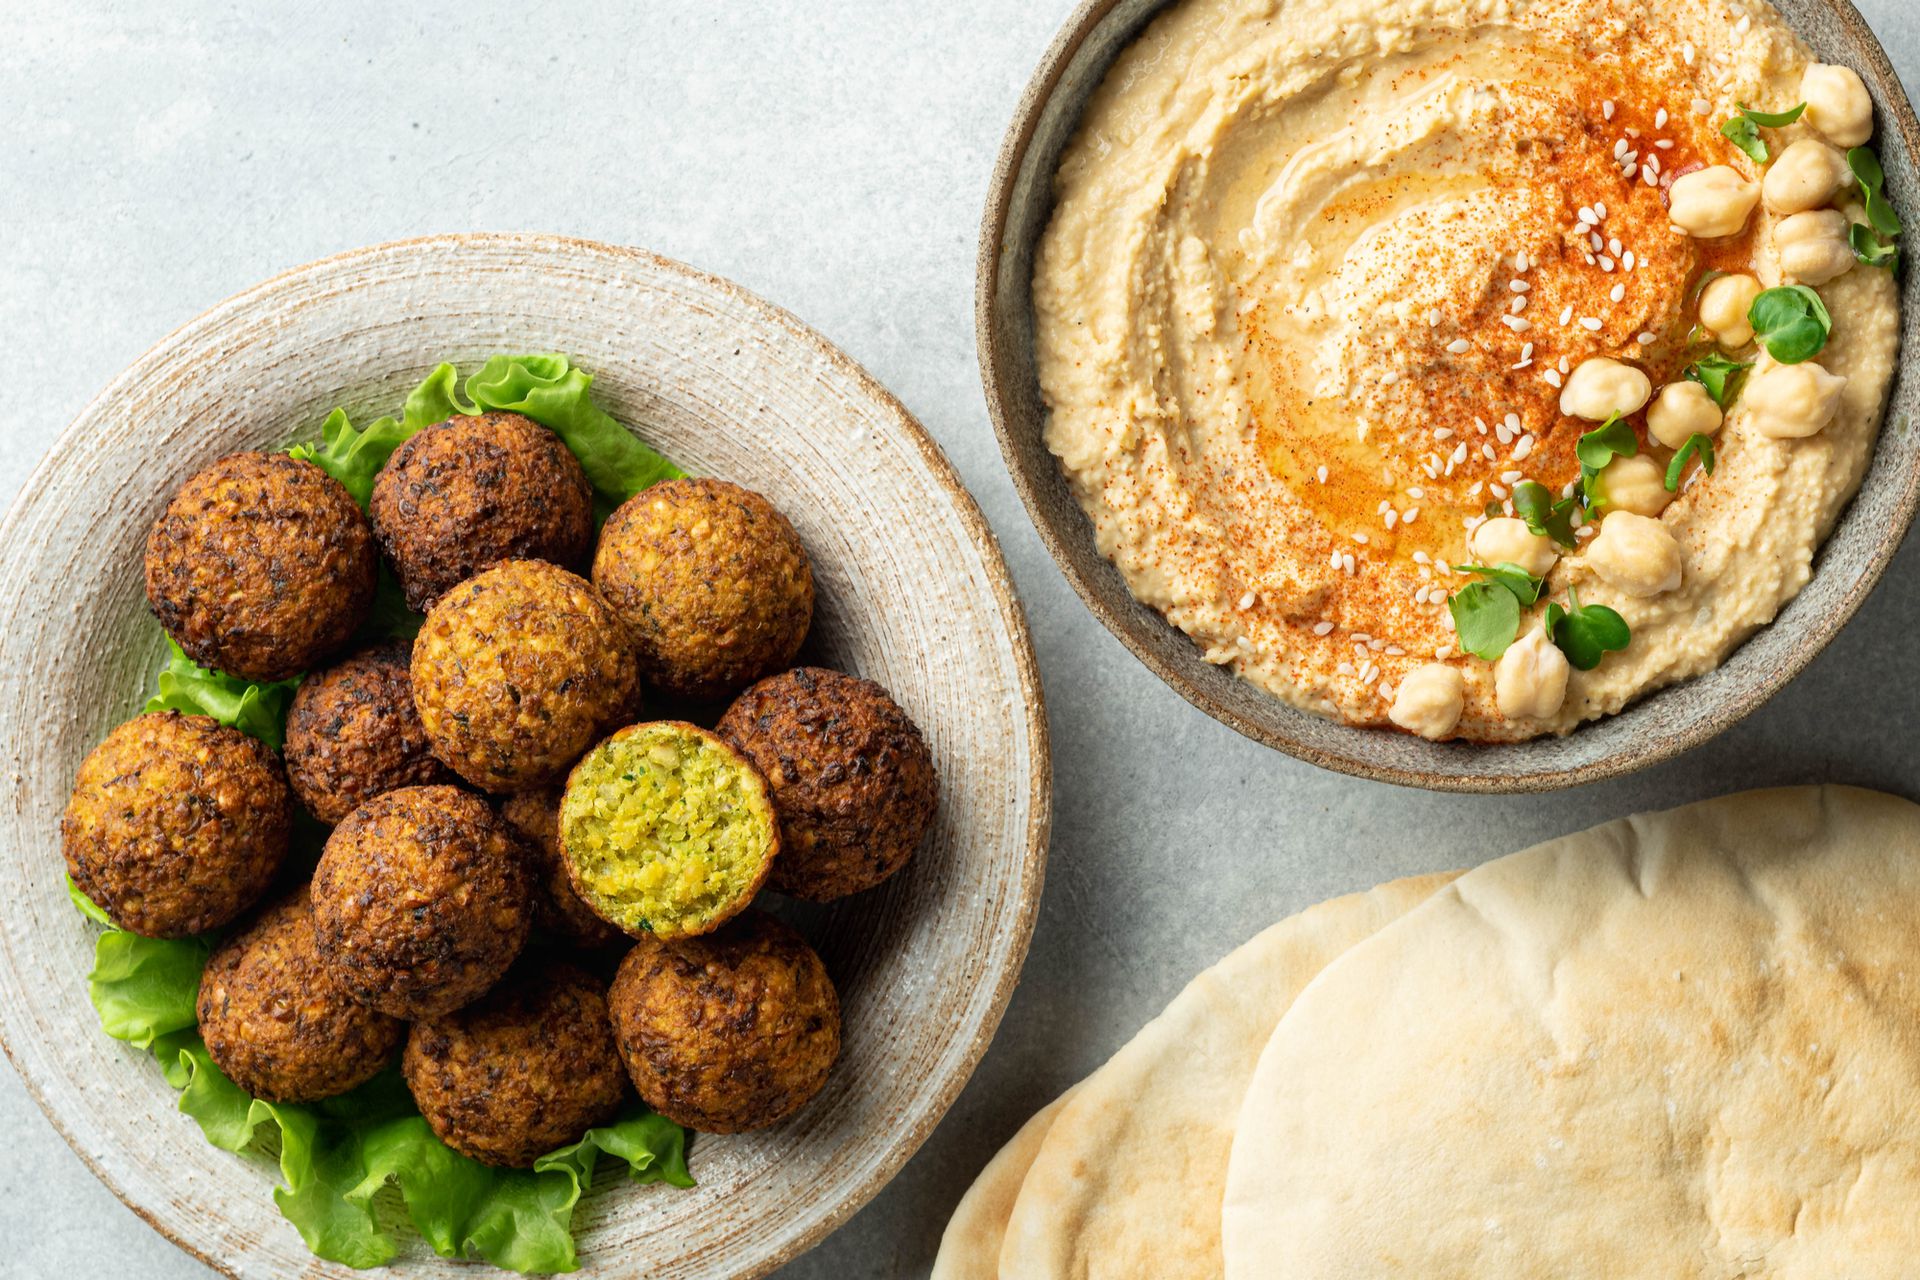 El falafel israeli se sirve acompañado de hummus y pan pita.